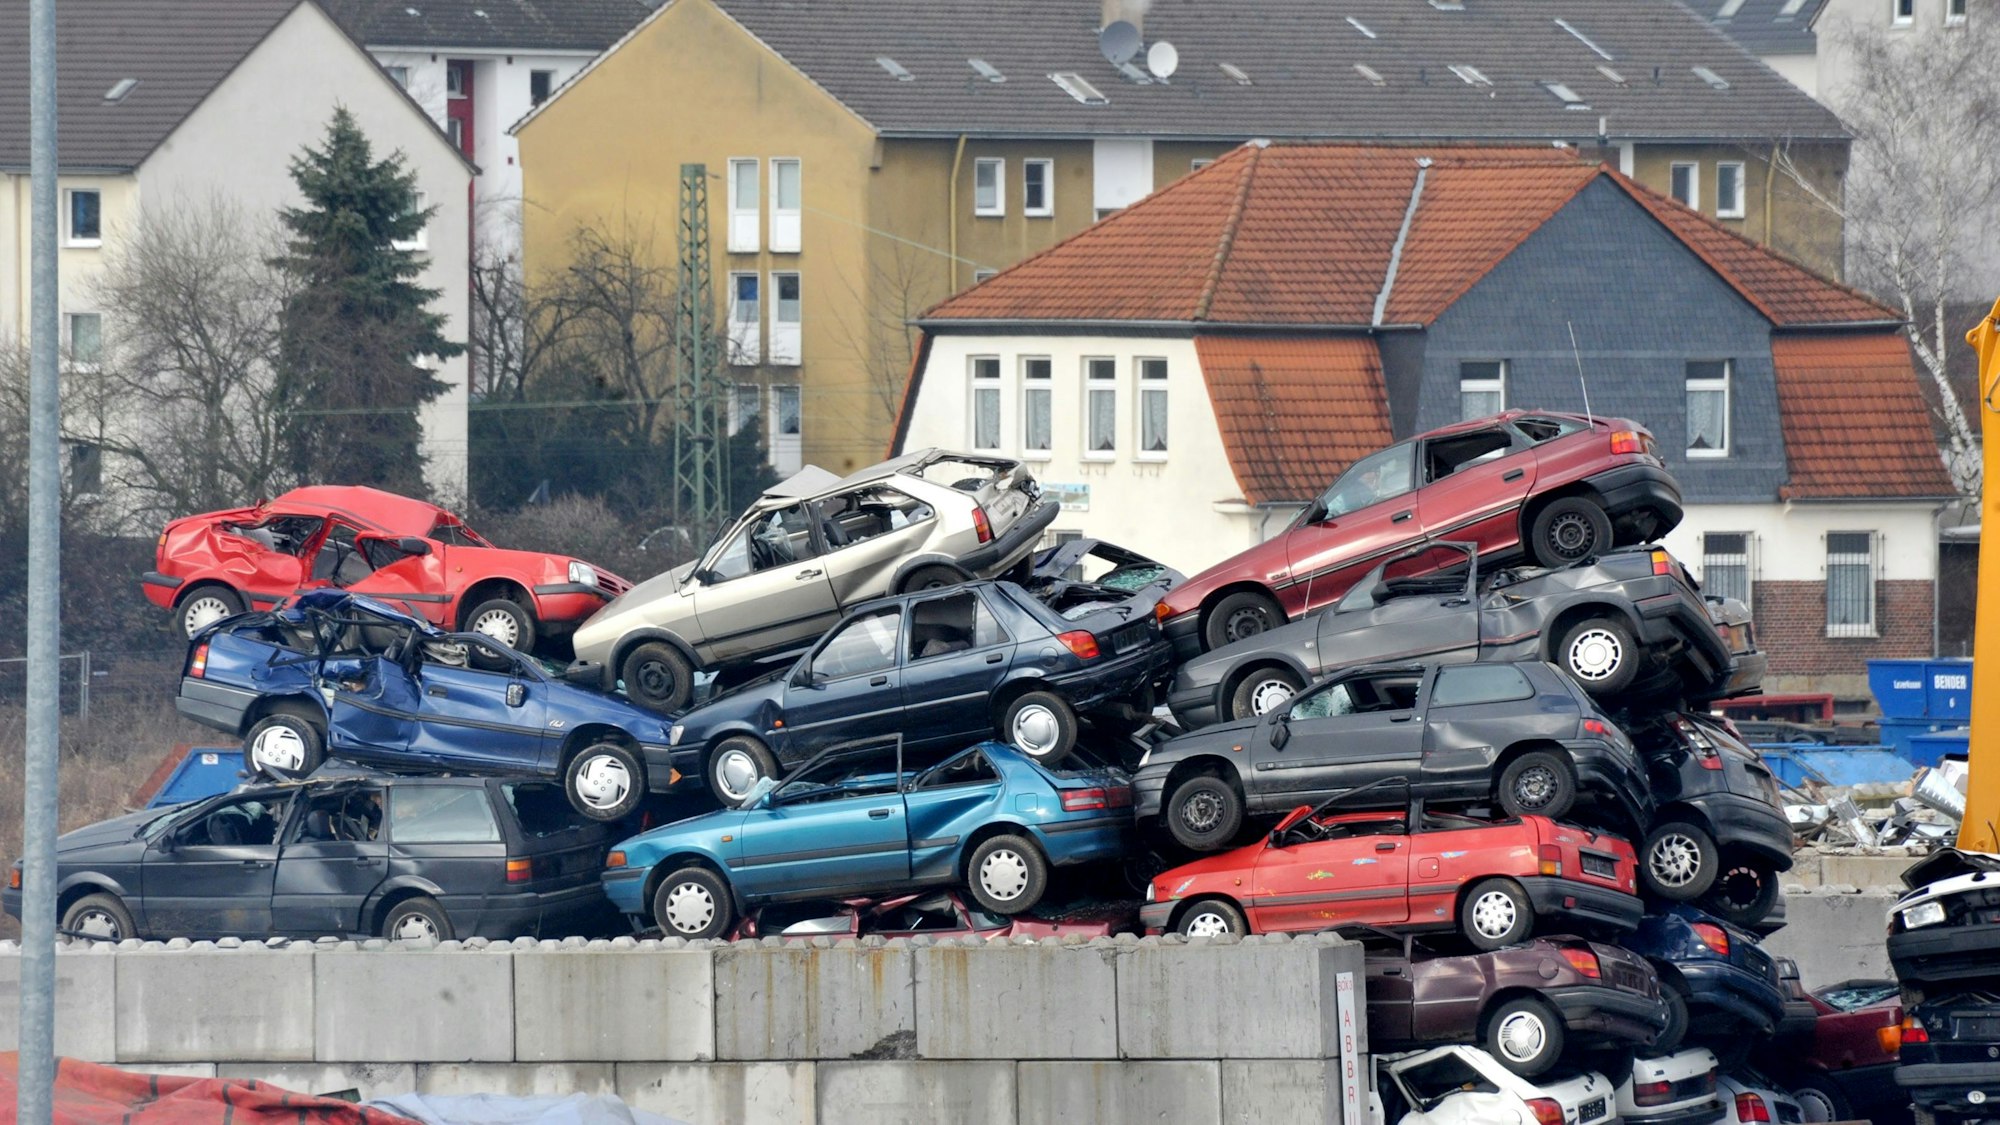 Abwrackprämie: Auf dem Schrottplatz (Autoverwertung) Bender in Leverkusen-Opladen werden die Autos mittlerweile zu hohen Türmen gestapelt.Bild: ralf krieger
Copyright ralf krieger, 